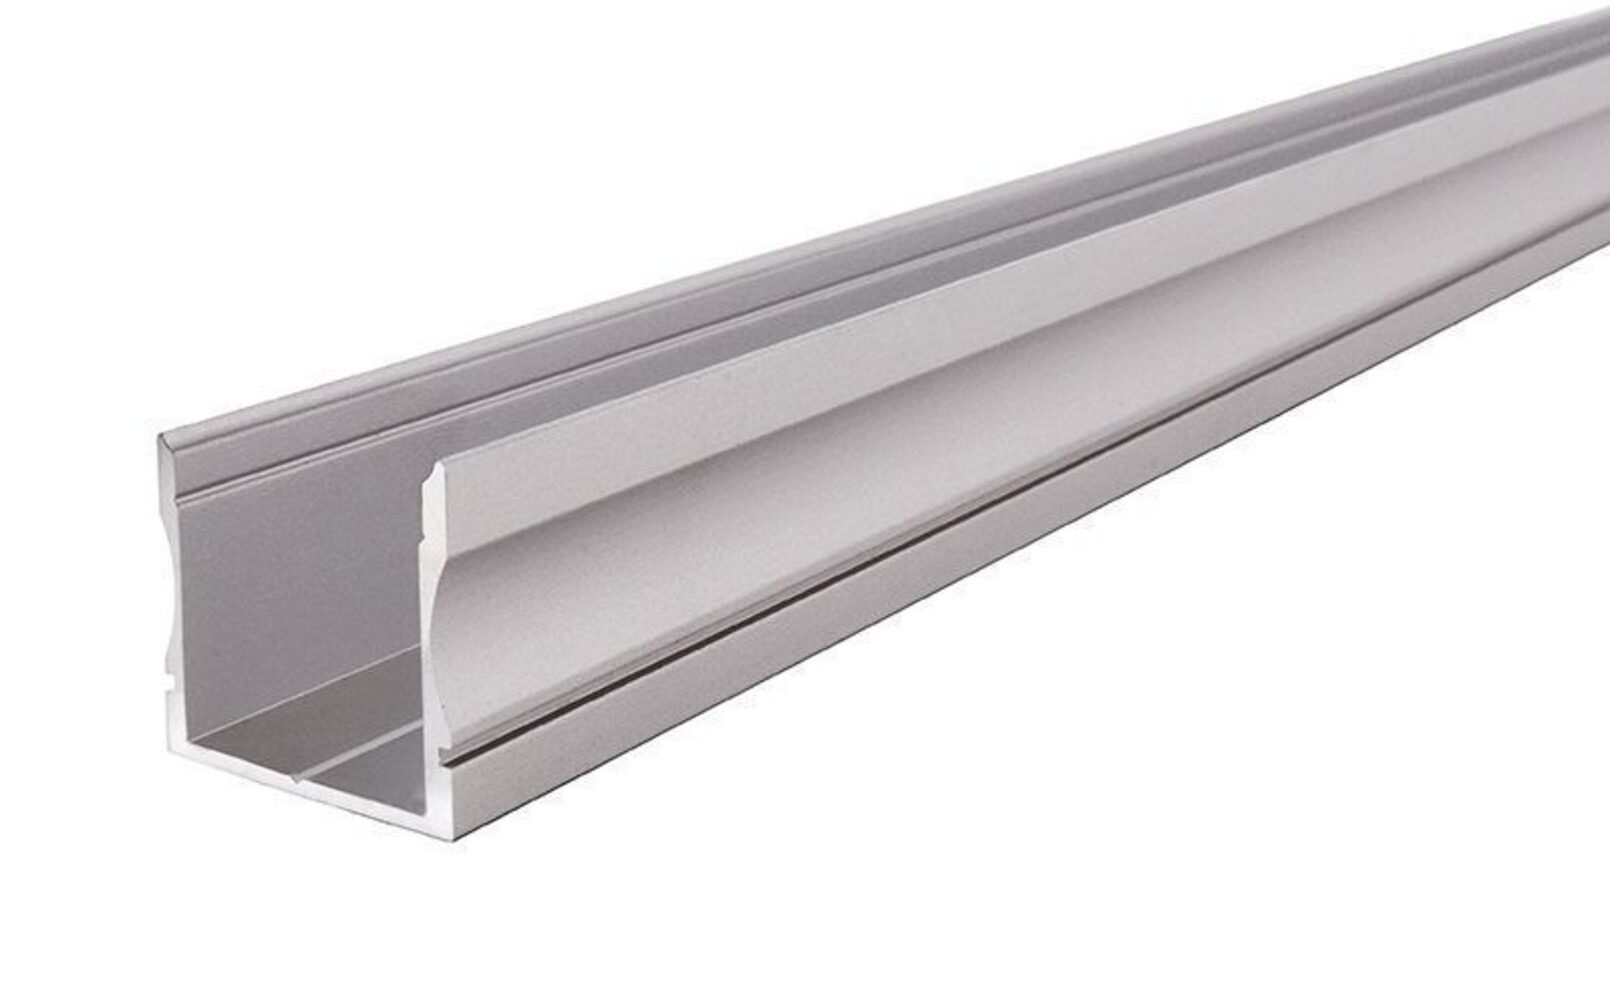 Hochwertiges LED-Profil von Deko-Light in Silber matt eloxiert, ideal für 20-21.3 mm LED-Stripes